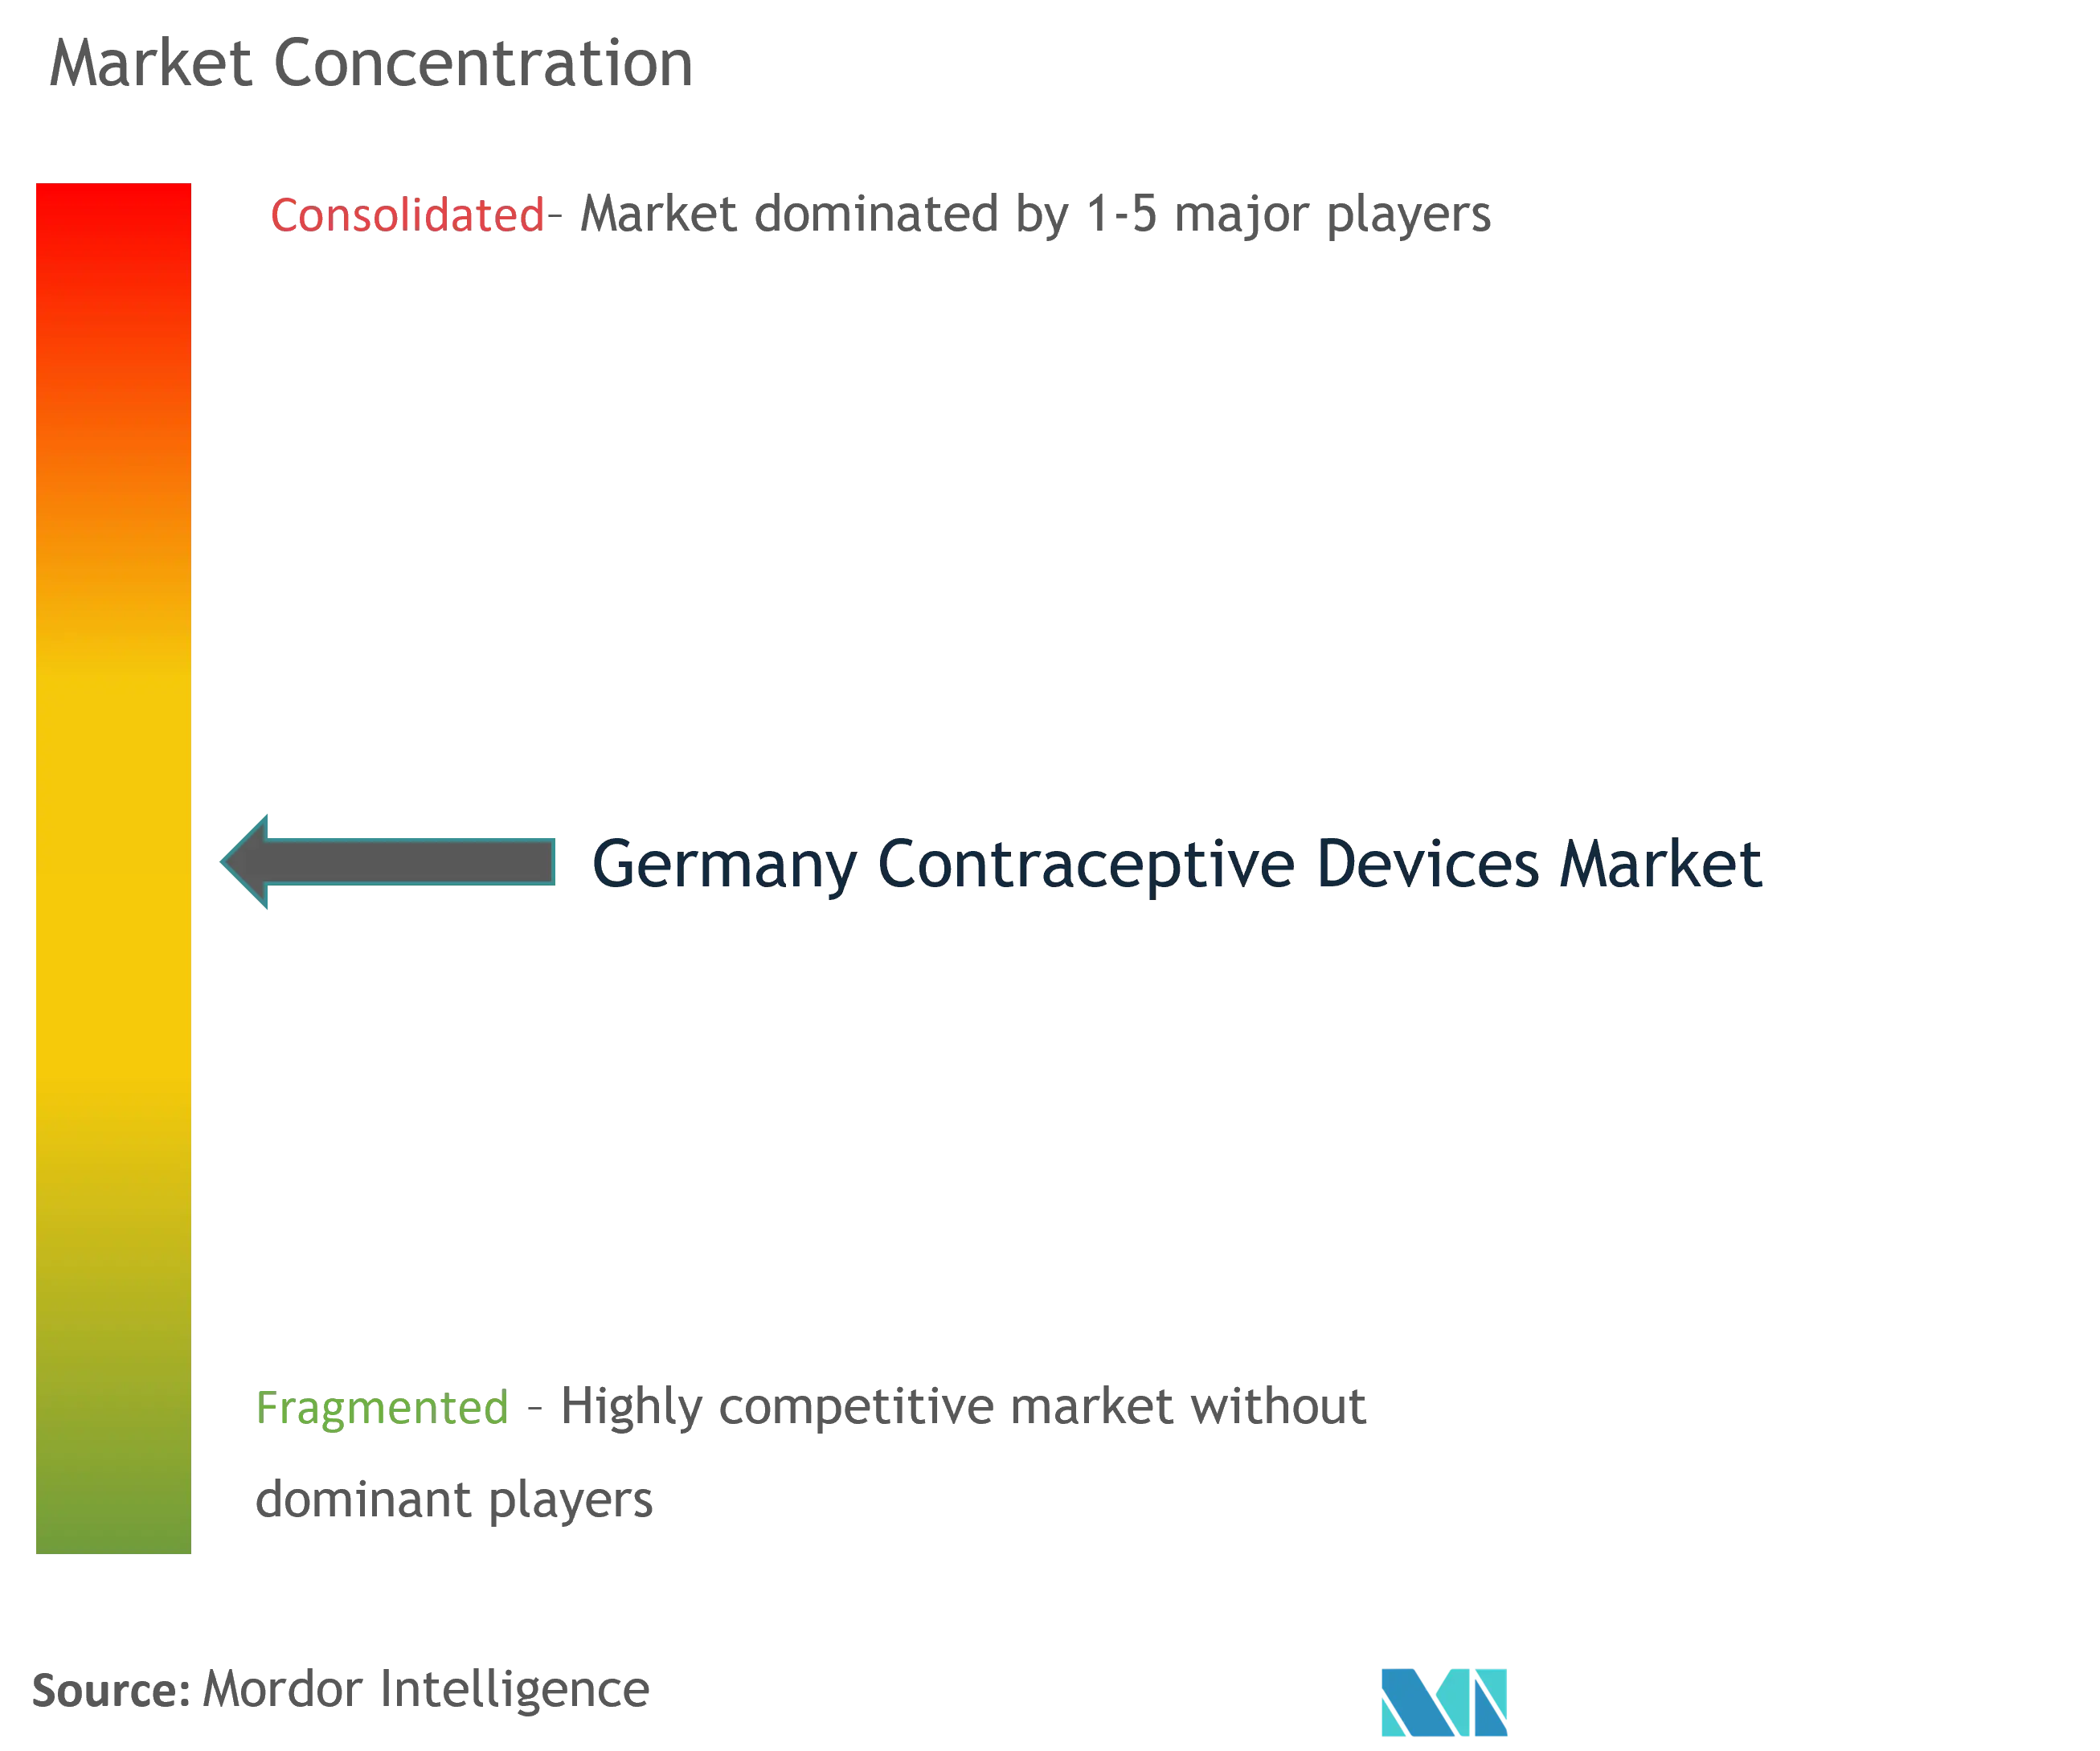 Dispositivos anticonceptivos de AlemaniaConcentración del Mercado